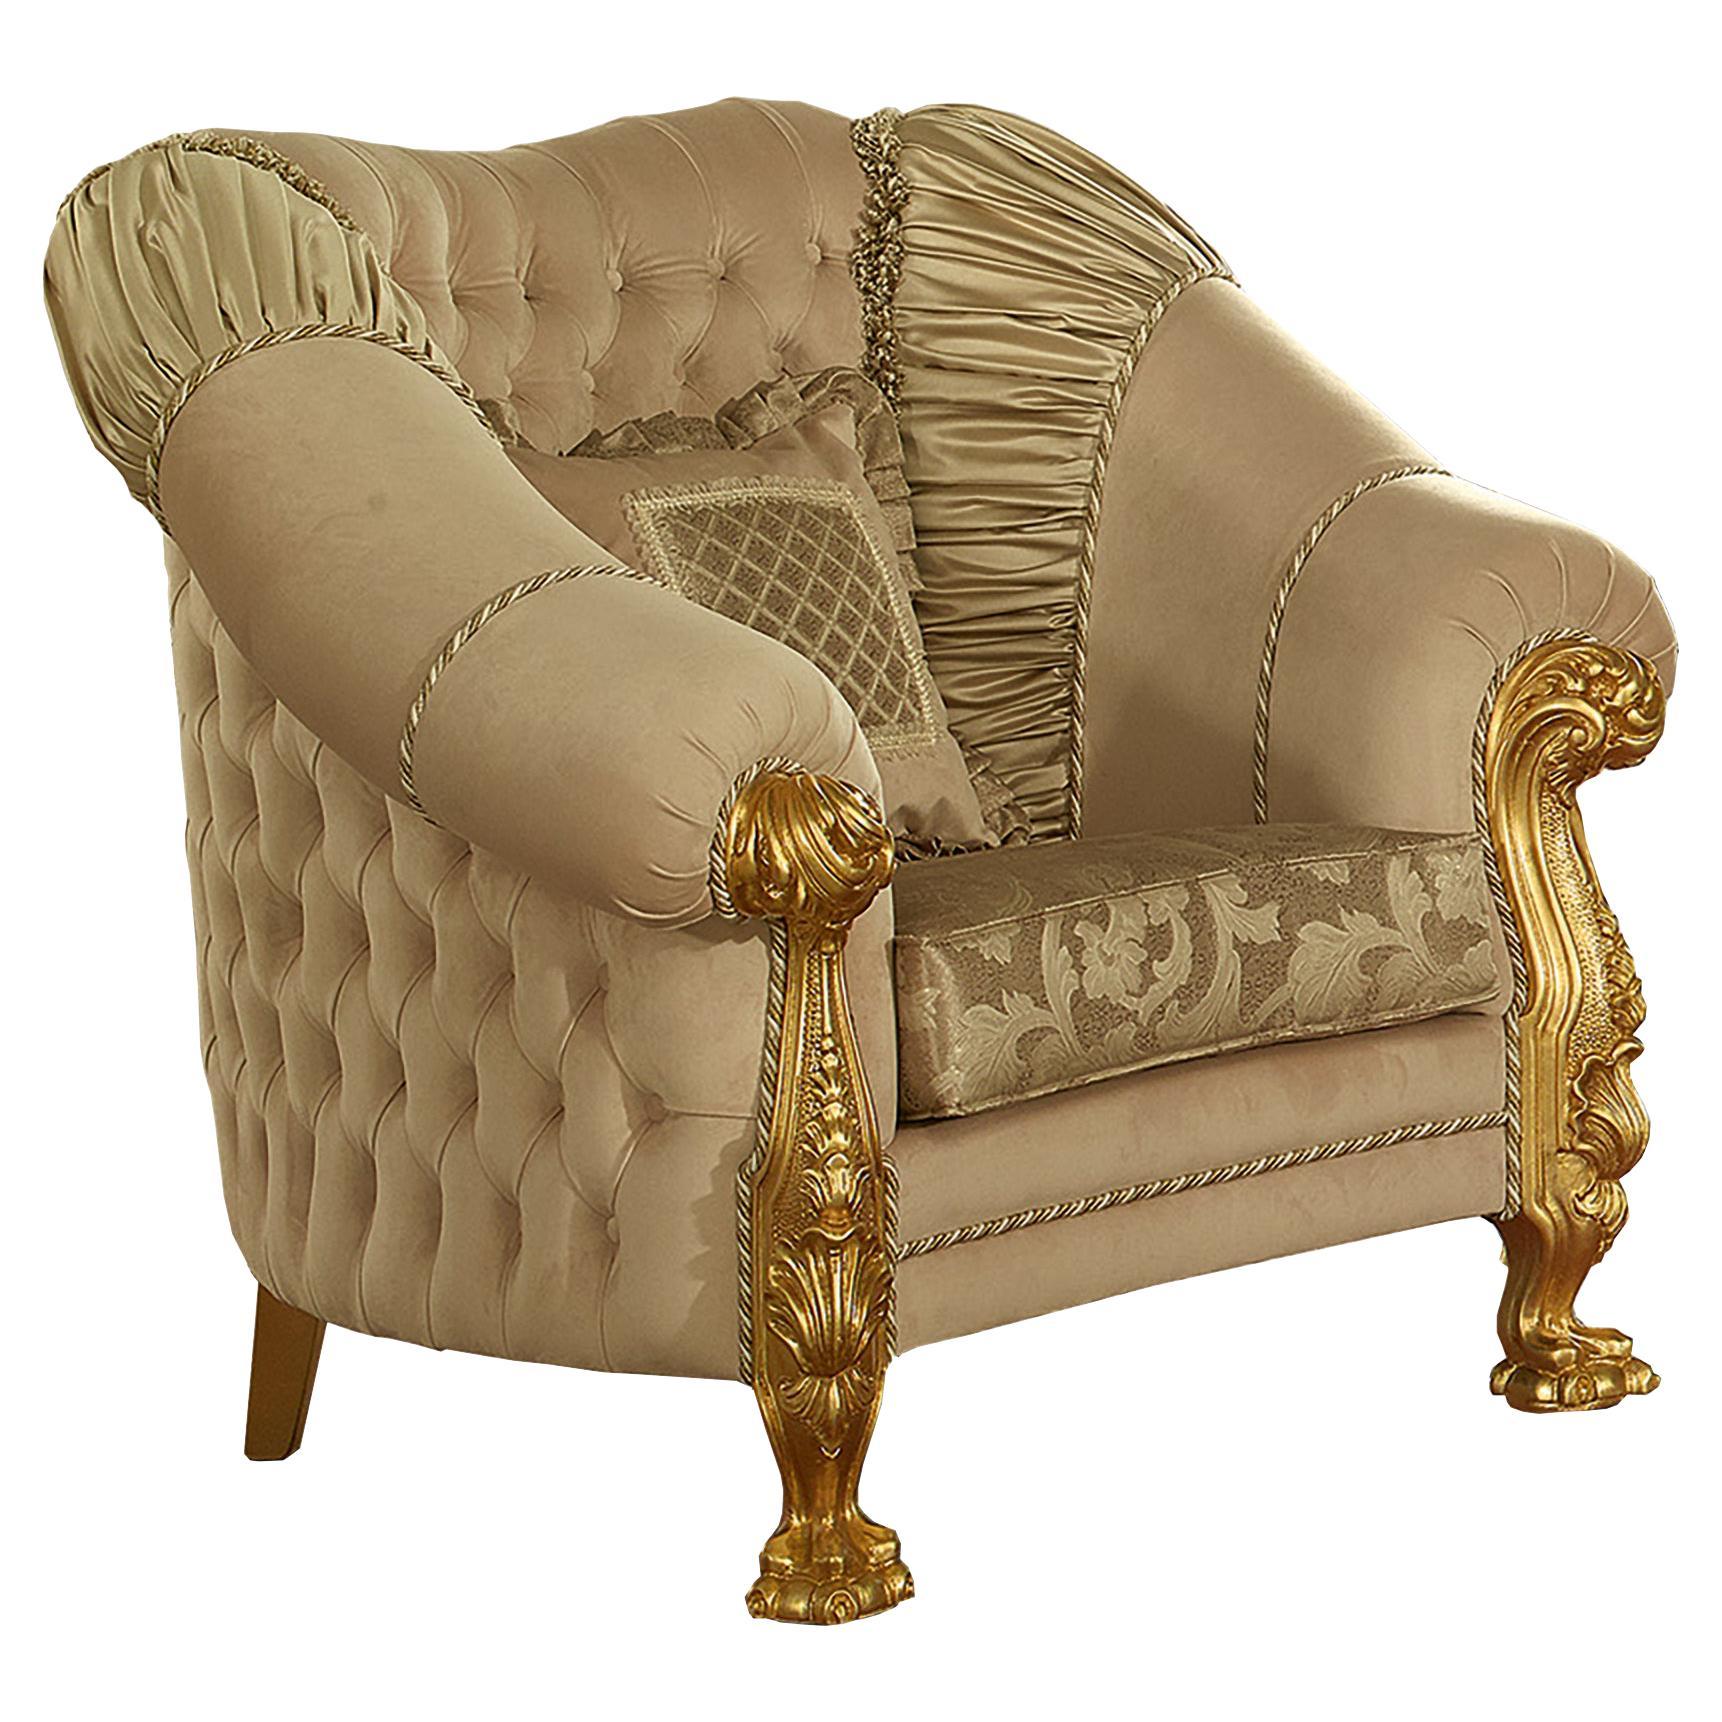 Maßgefertigter vergoldeter Sessel in elfenbeinfarbener Capitonne und Löwenschnitzereien